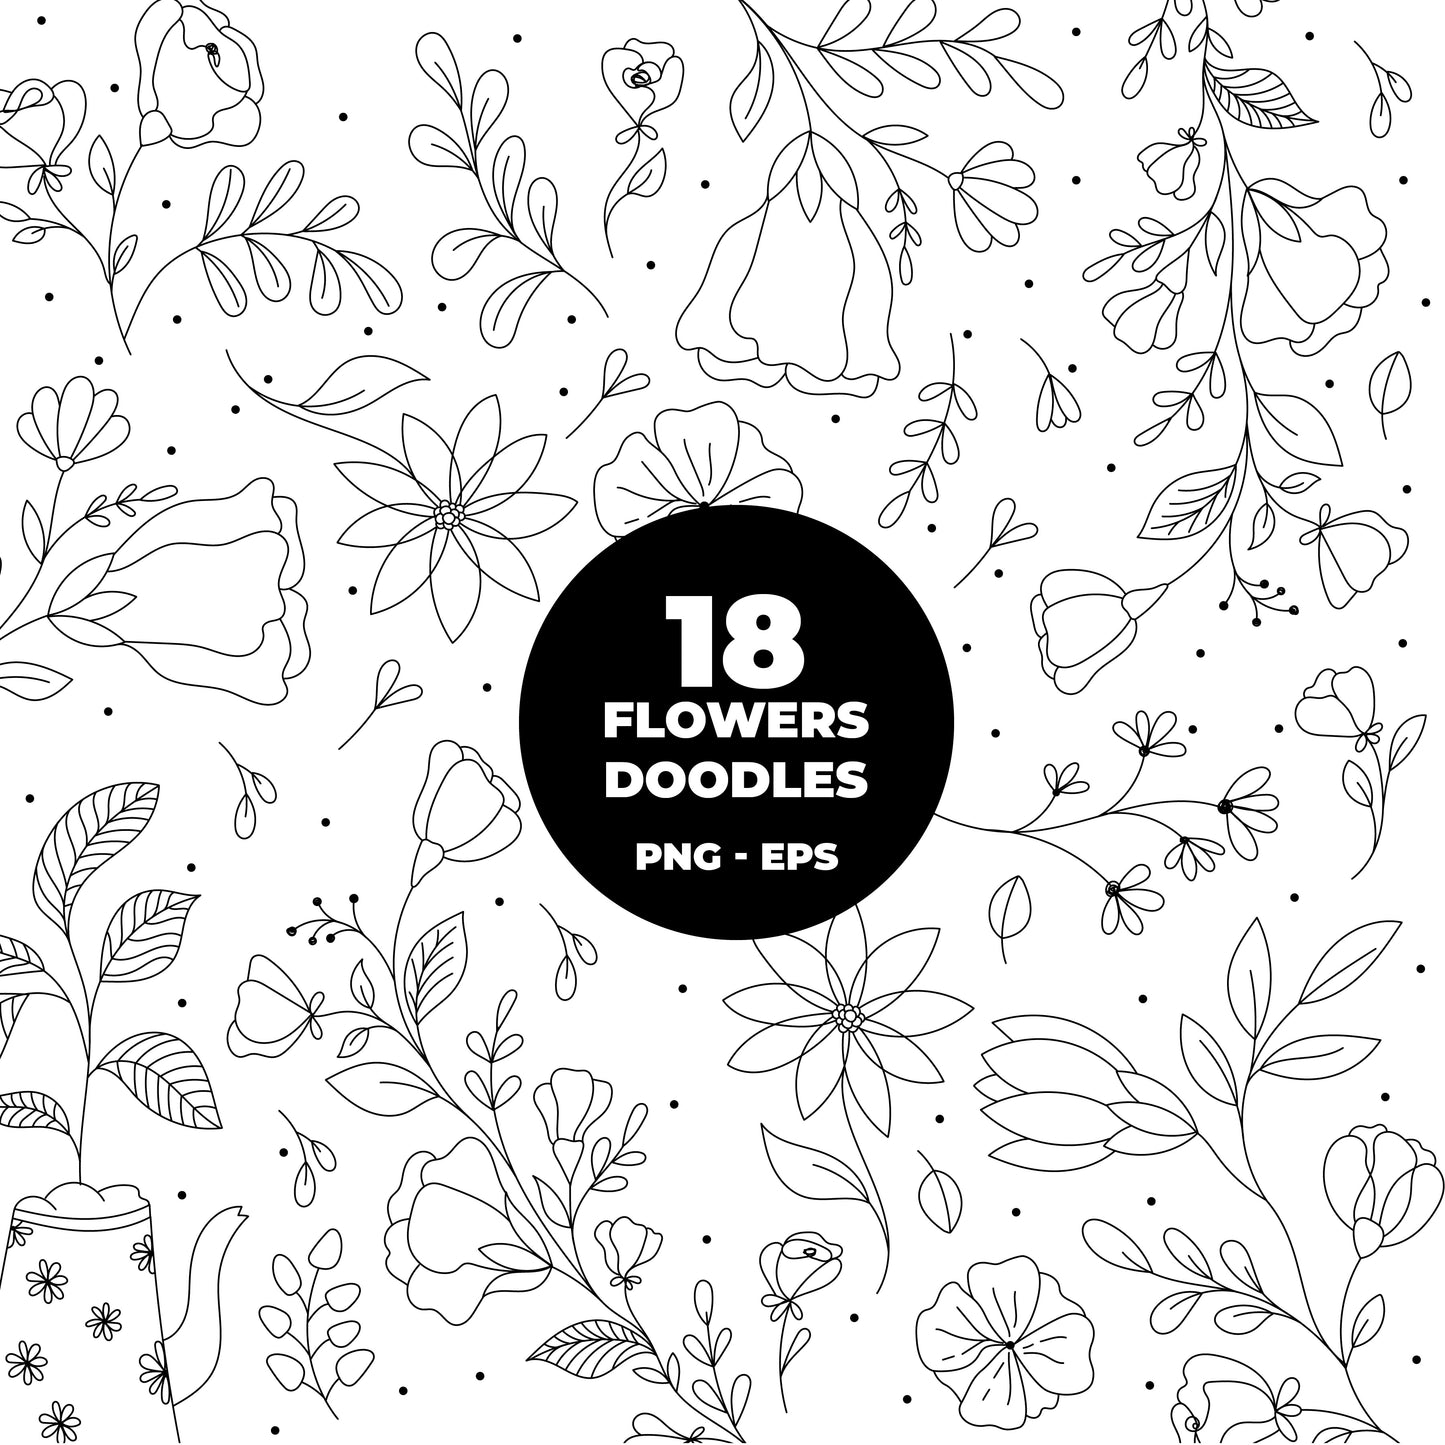 COD1213  Flowers doodle cliparts, Succulent SVG, CACTUS SVG, House Plants Clipart, Terrarium Cactus Art, Cactus Doodles Clipart, Digital Stamp